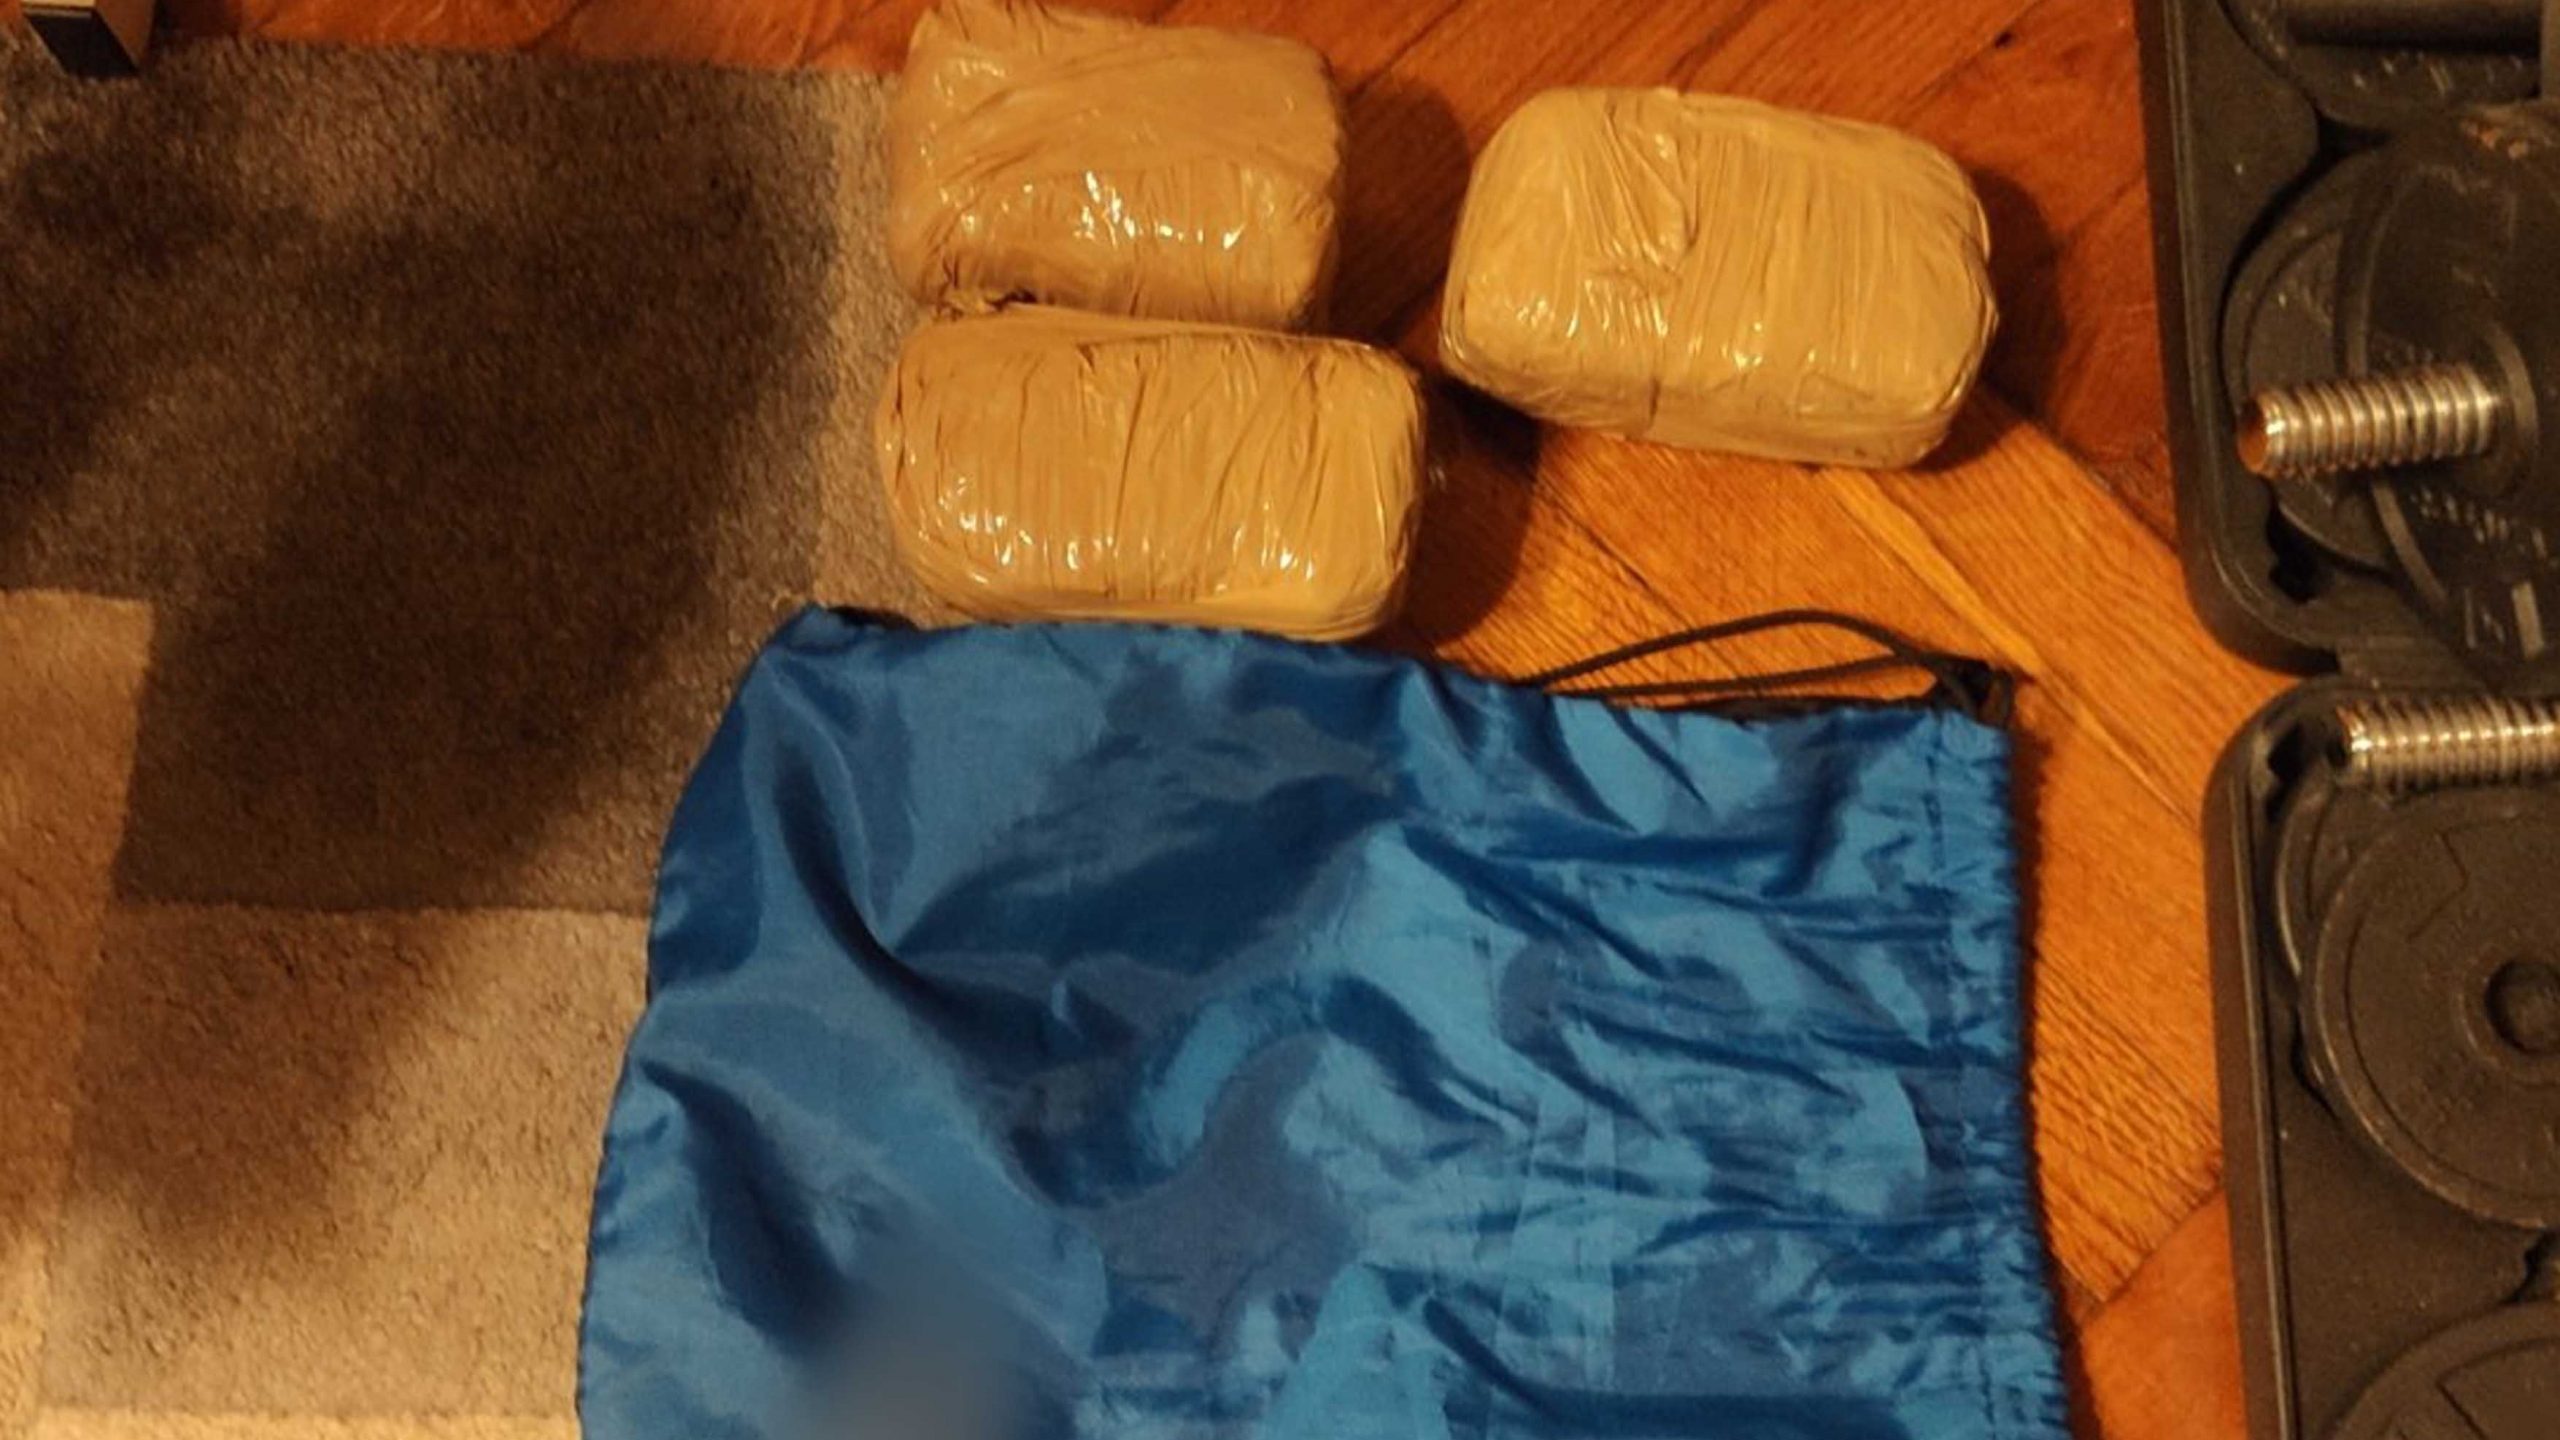 Négy és fél kiló drogot találtak egy férfinél a Terézvárosban